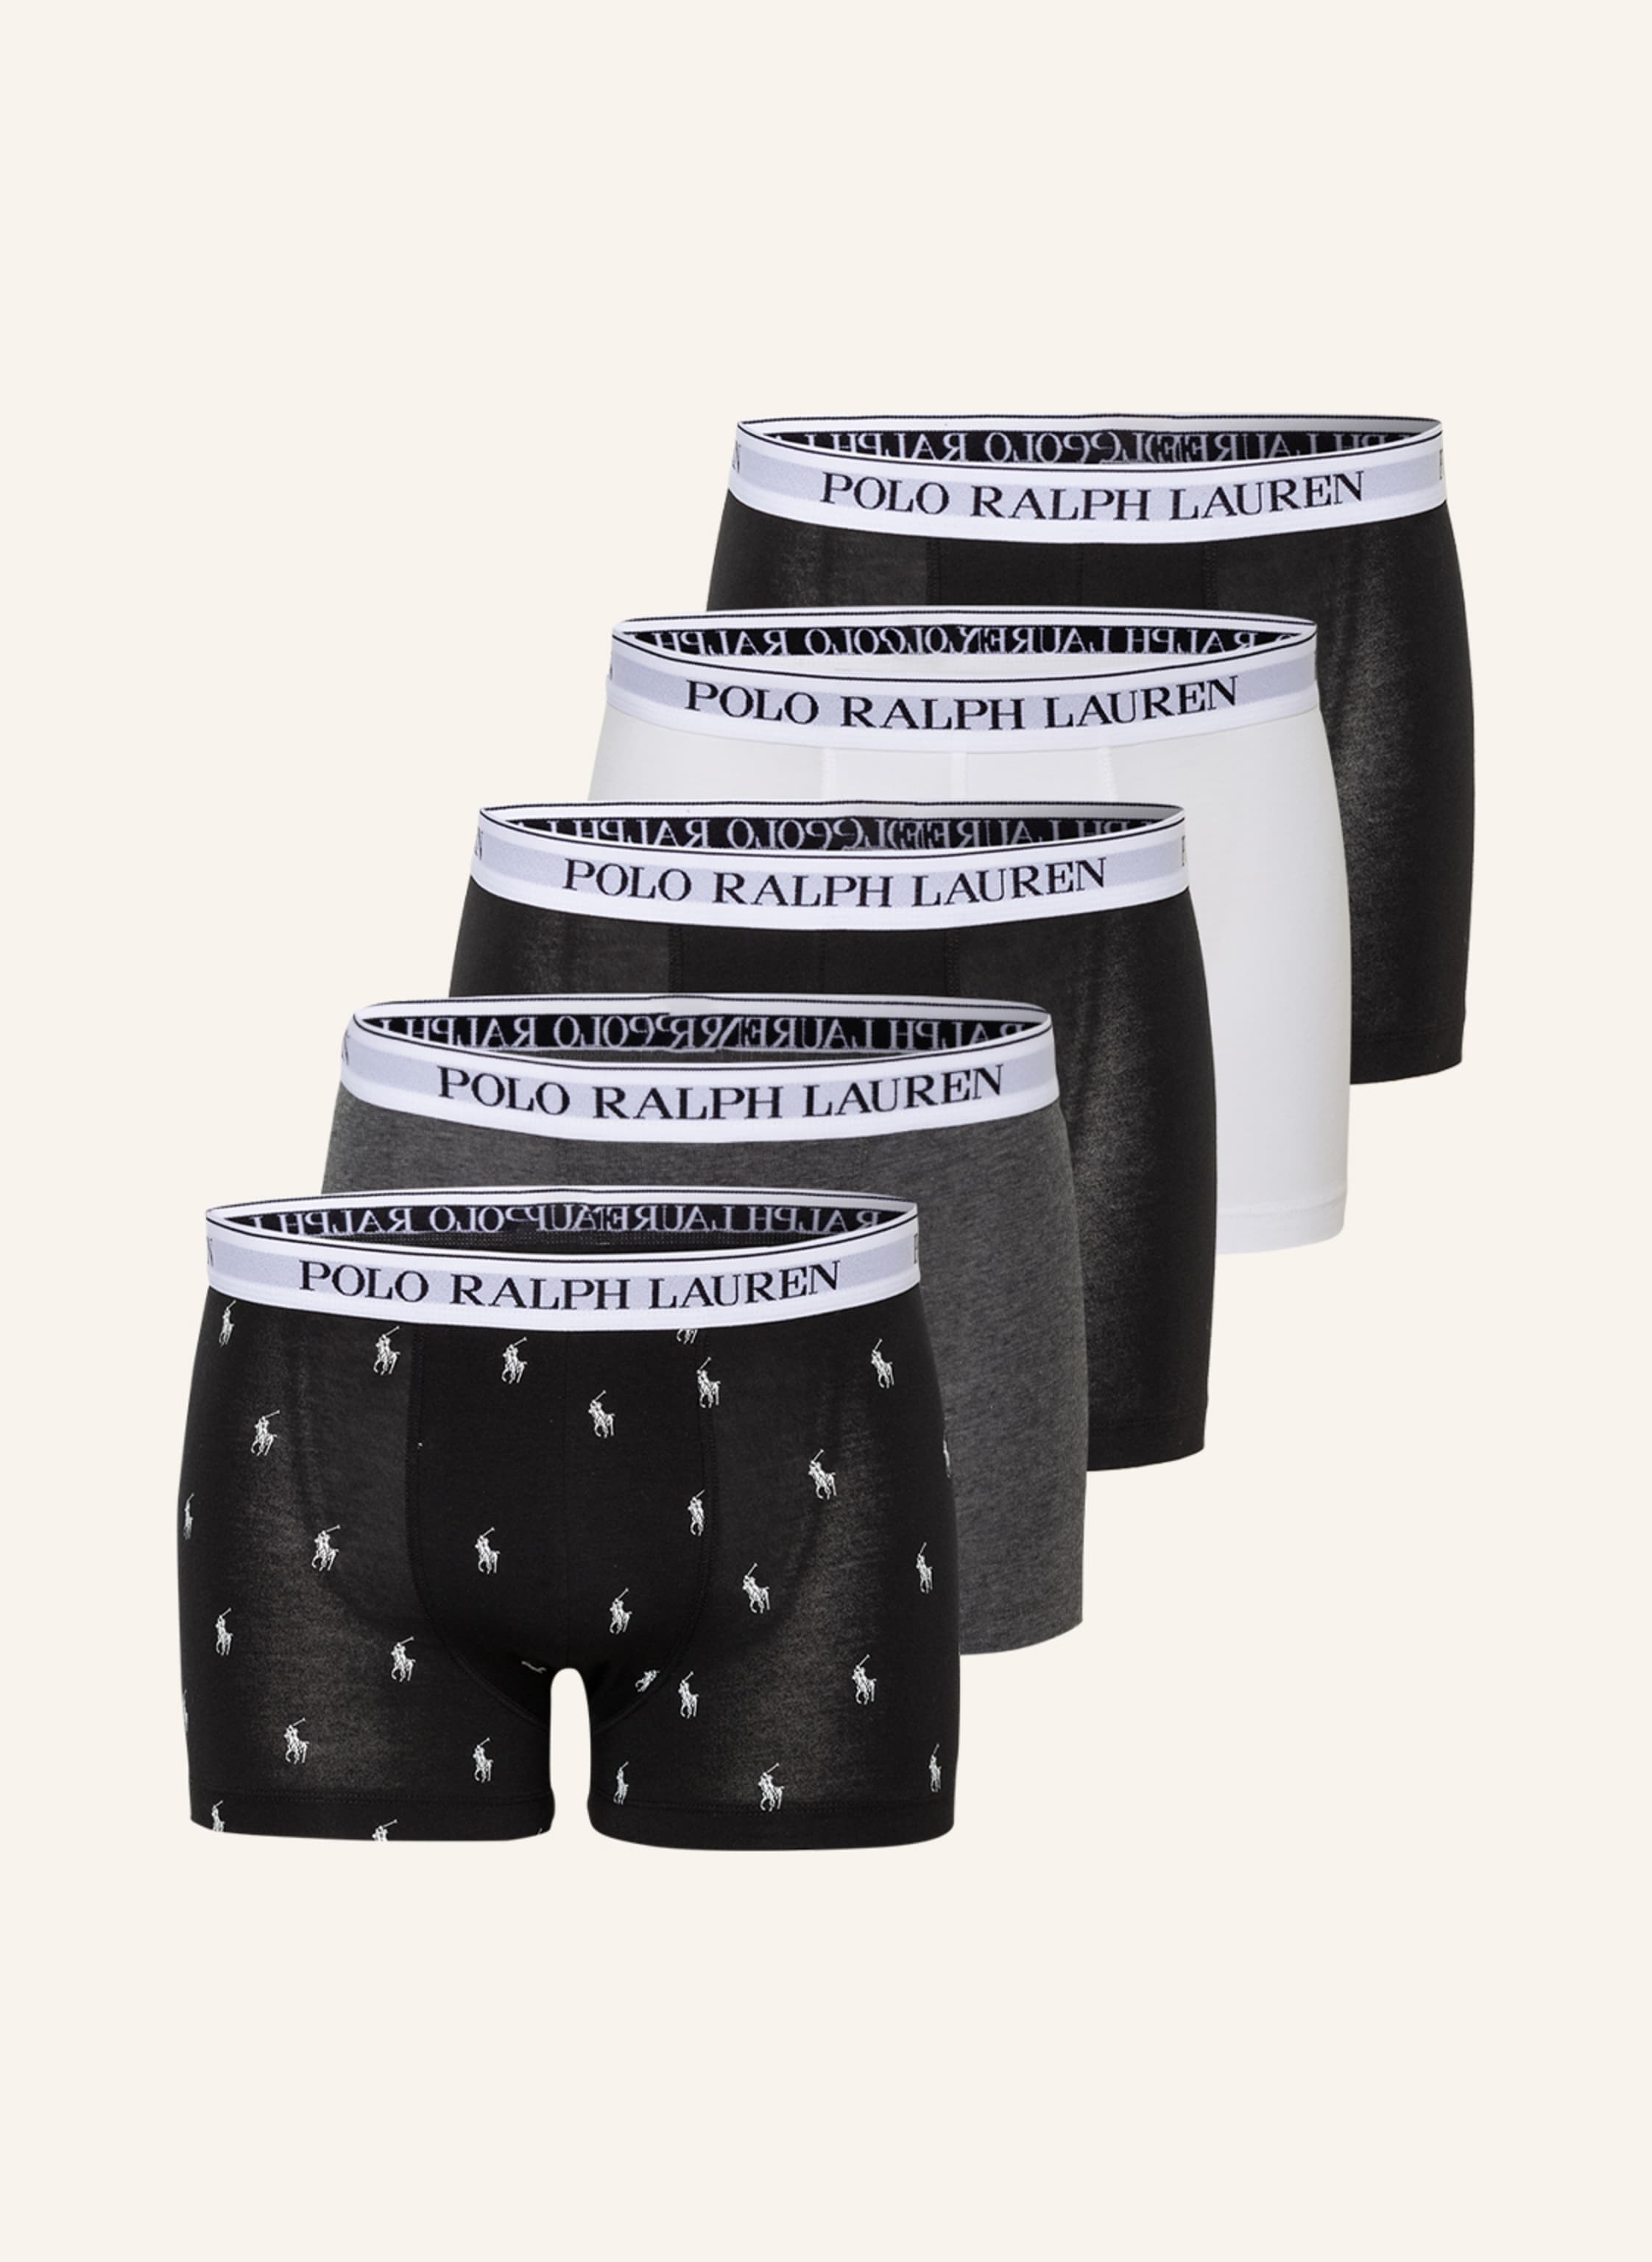 POLO RALPH LAUREN Men's Boxer Shorts, 3 Pack - BOXER BRIEF - 3 PACK, 49,95 €